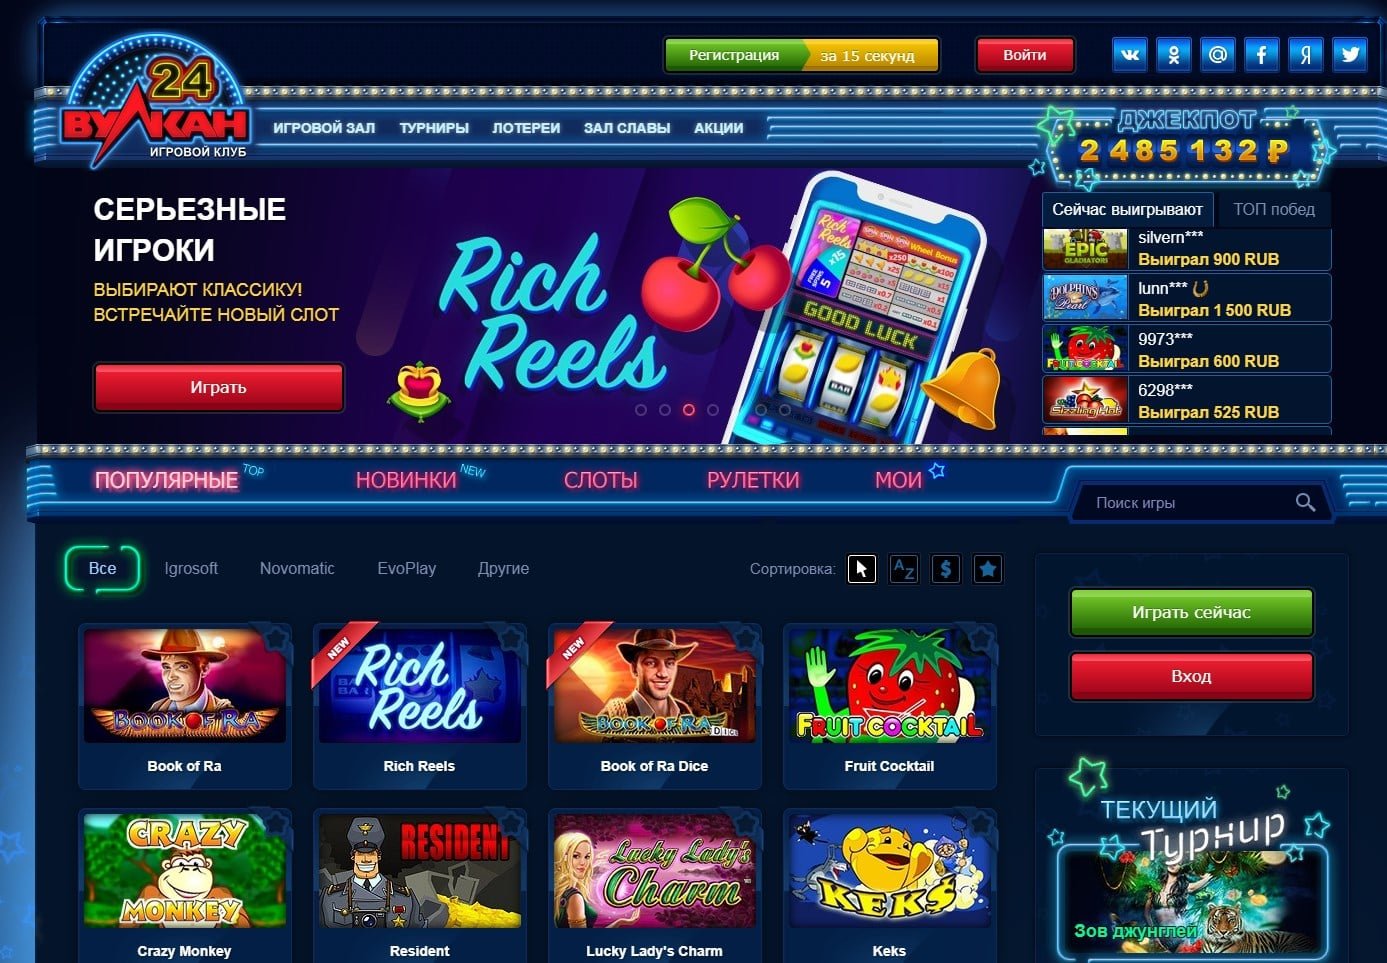 вулкан игровые автоматы онлайн клуб вулкан казино играть 24